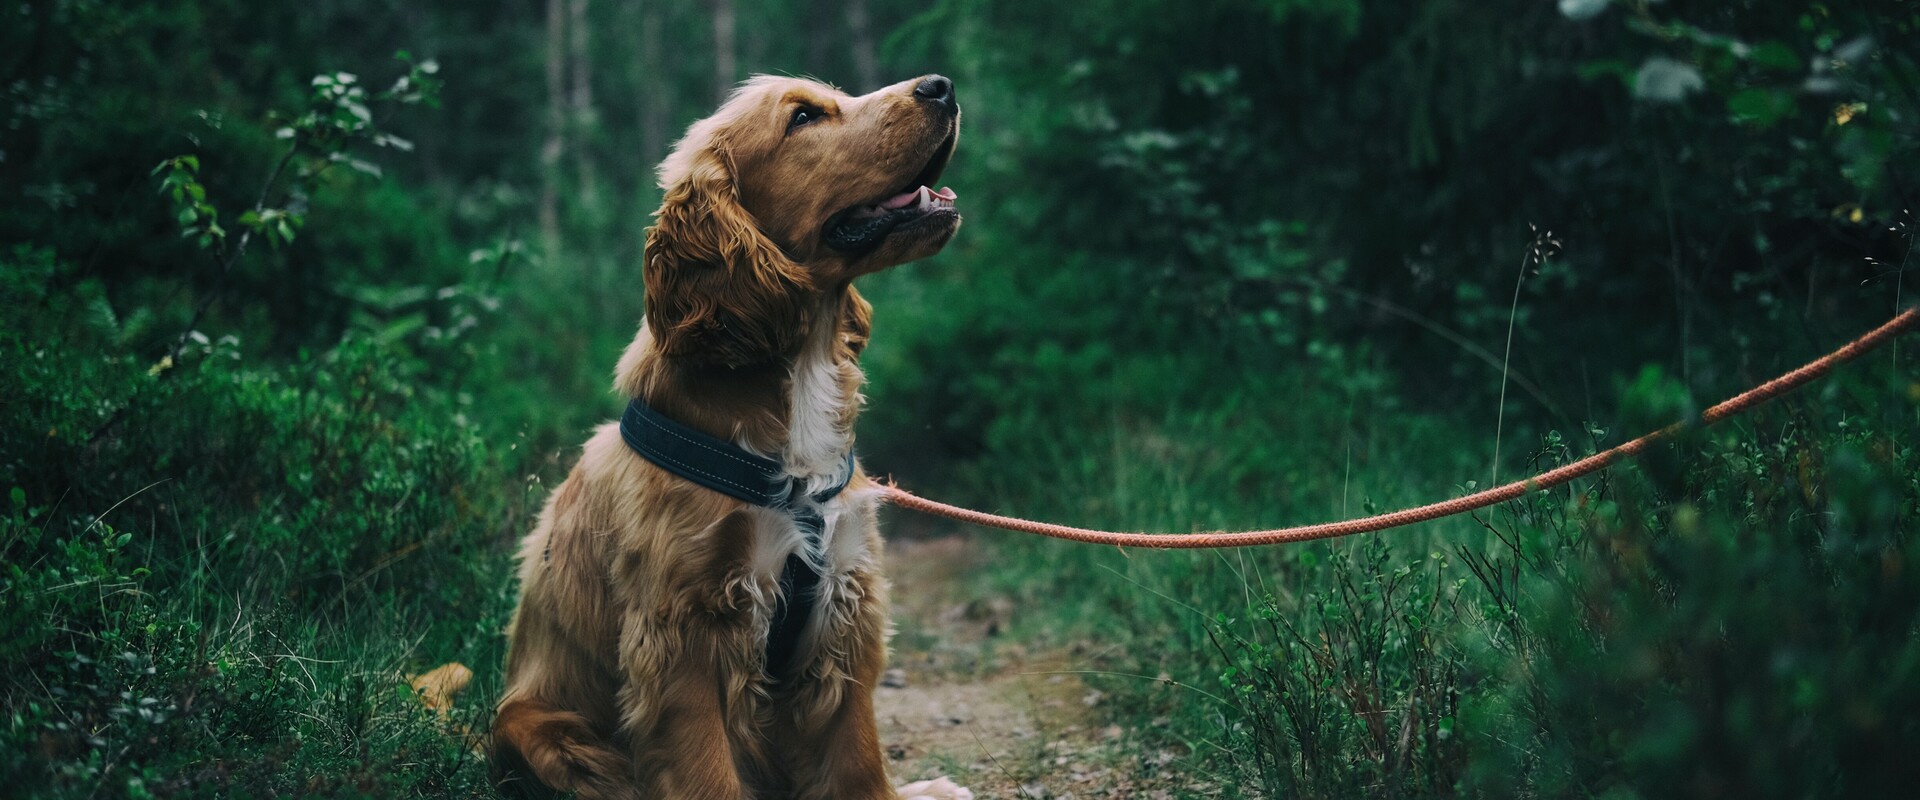 Im Urlaub mit Hund im Salzkammergut durch Wälder spazieren